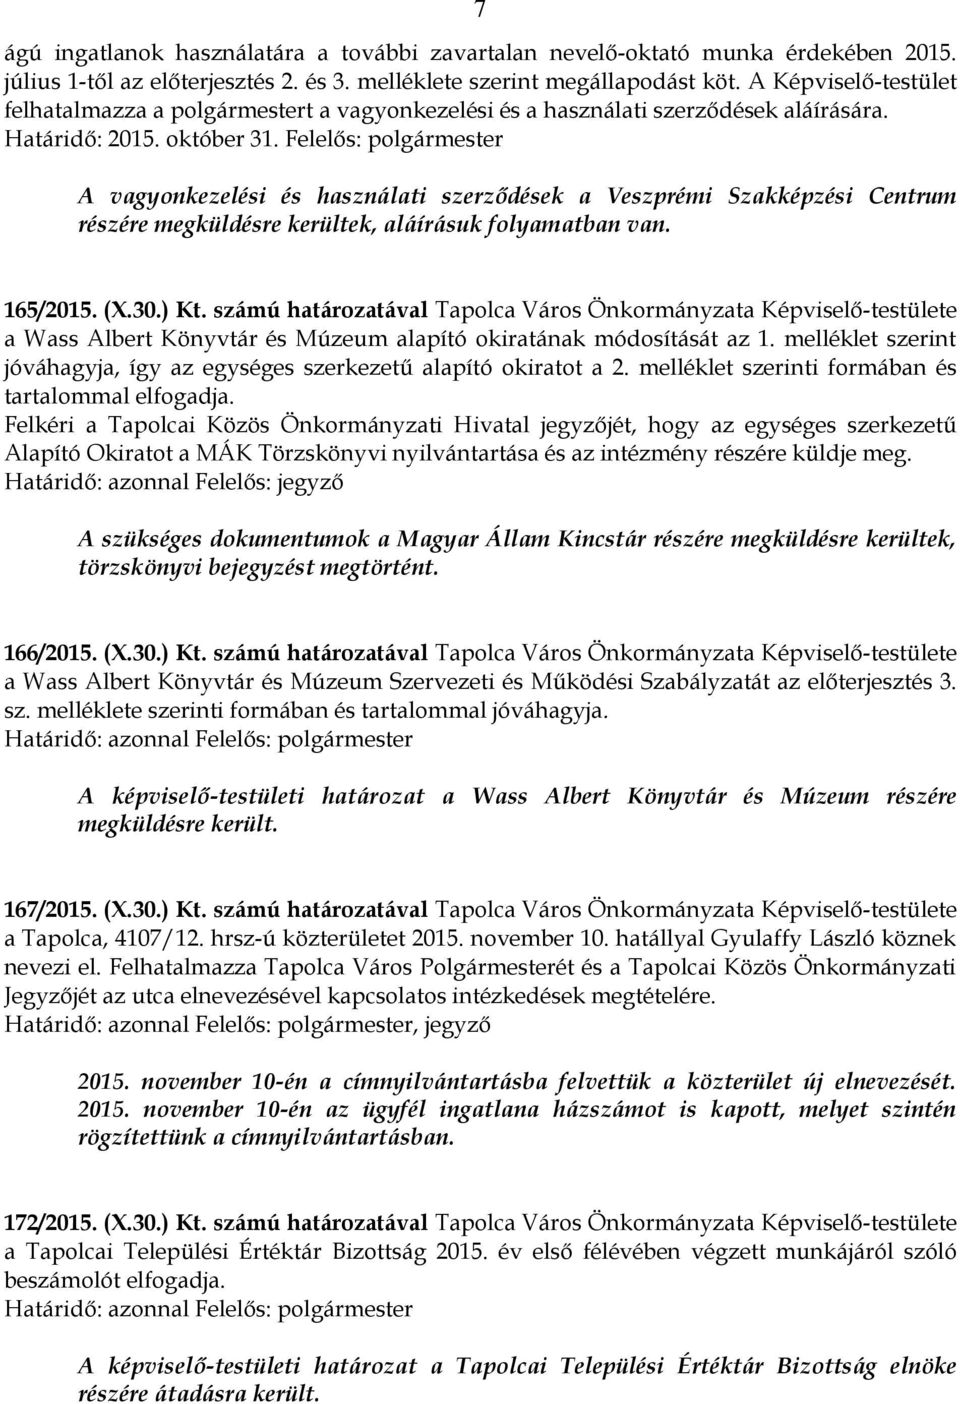 Felelős: polgármester A vagyonkezelési és használati szerződések a Veszprémi Szakképzési Centrum részére megküldésre kerültek, aláírásuk folyamatban van. 165/2015. (X.30.) Kt.